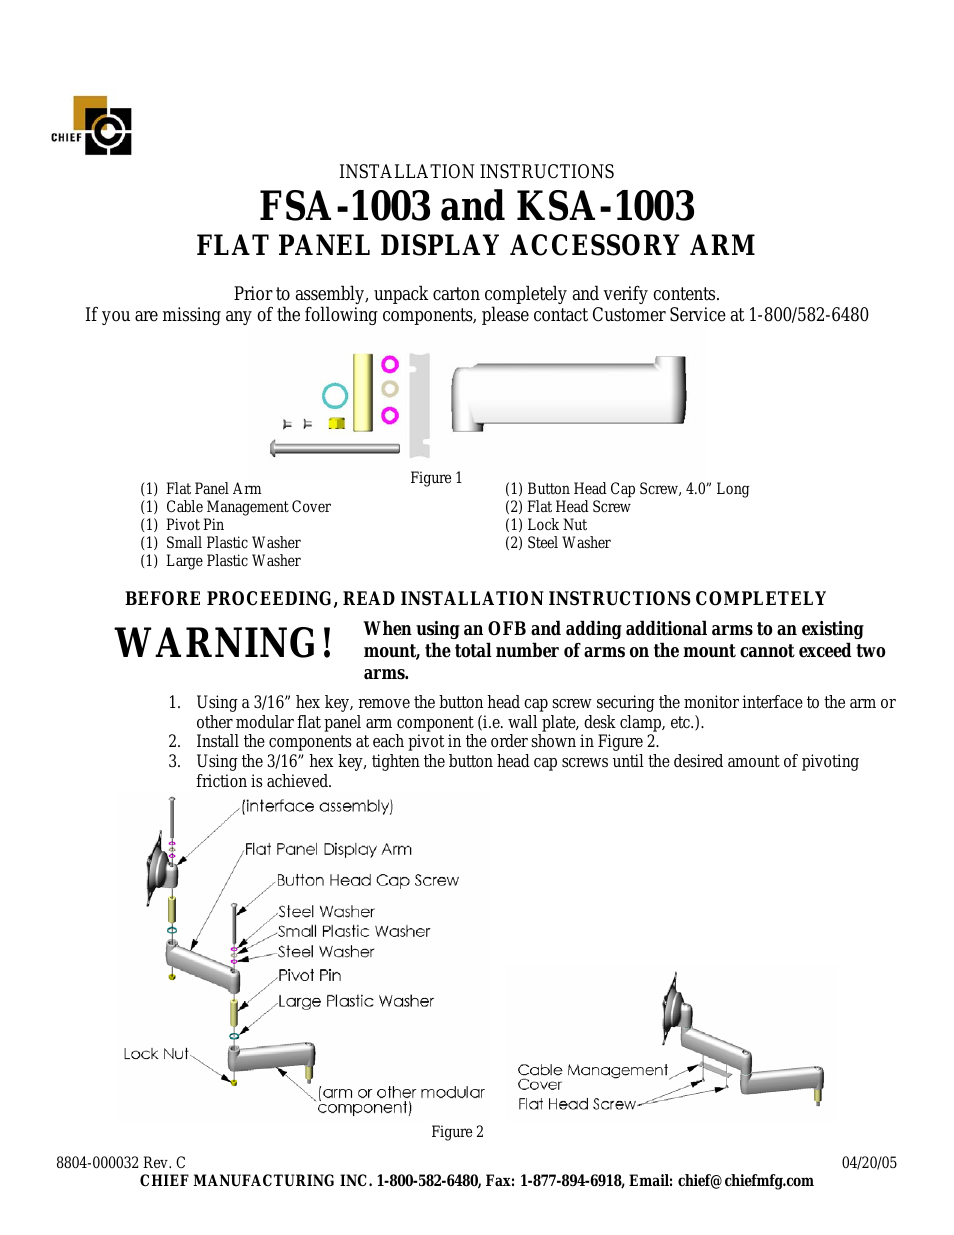 Flat Panel Display Accessory Arm FSA-1003